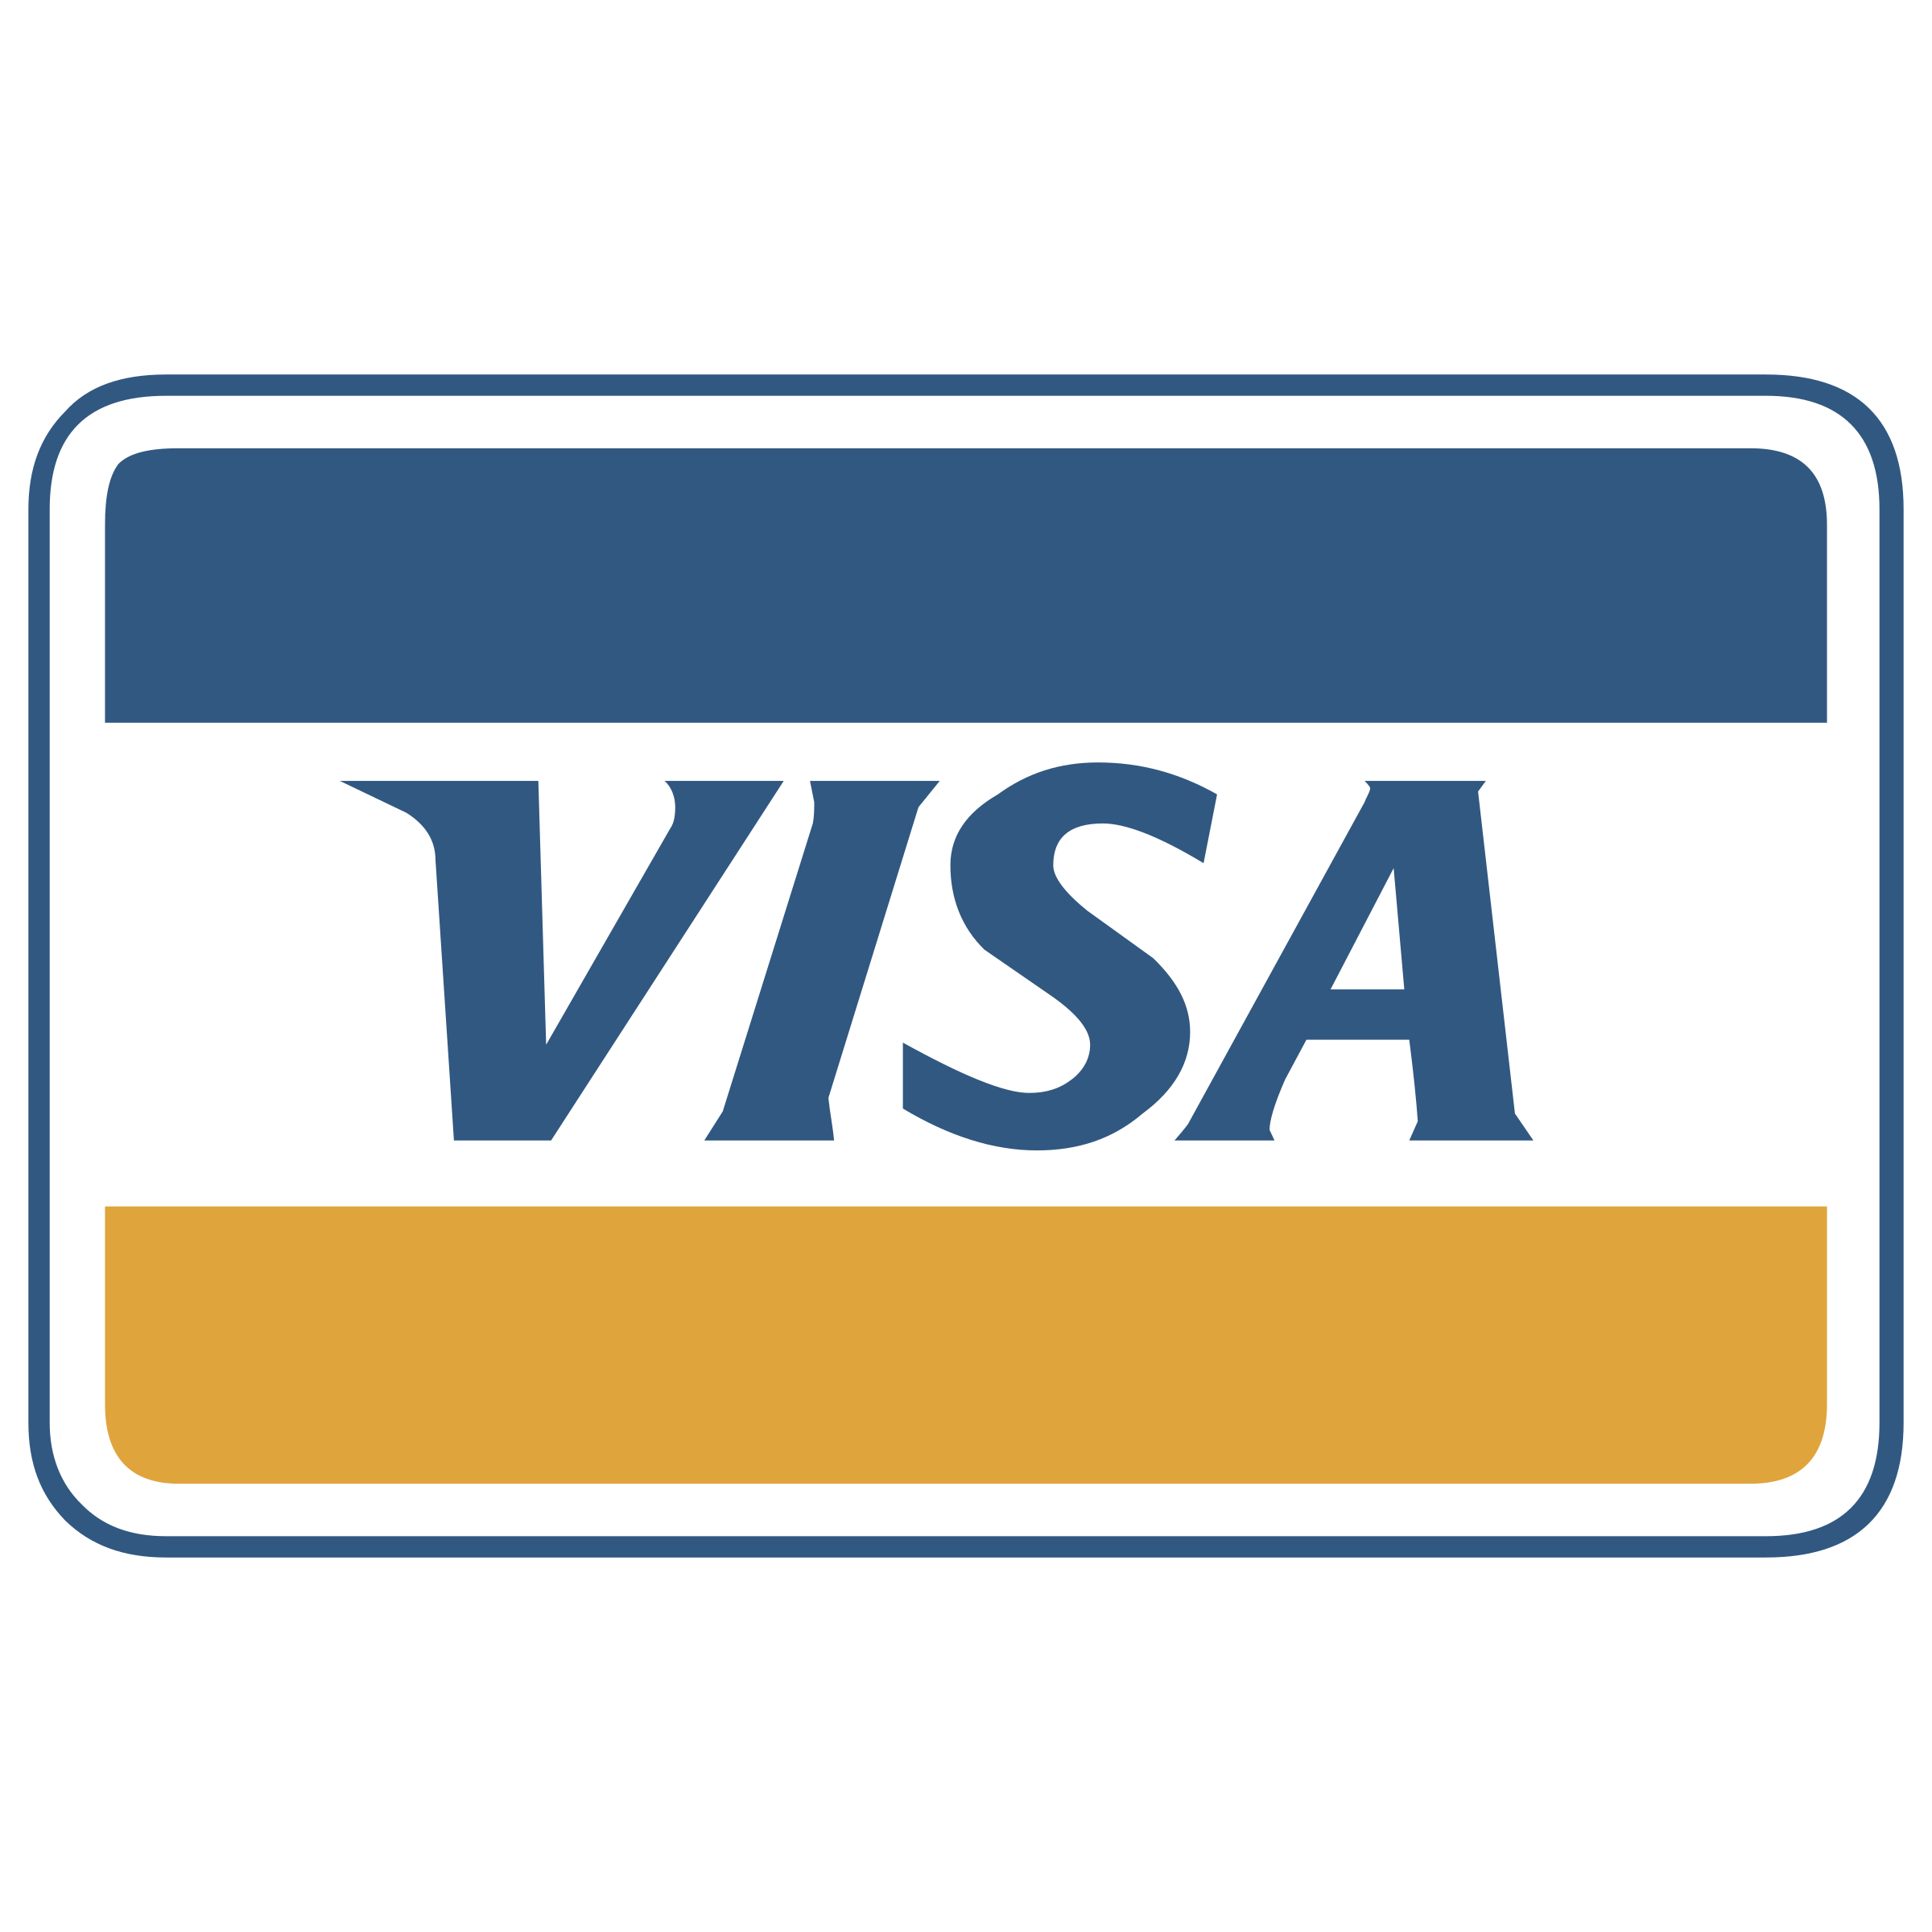 Tarjeta de visa logo transparente PNG gratis